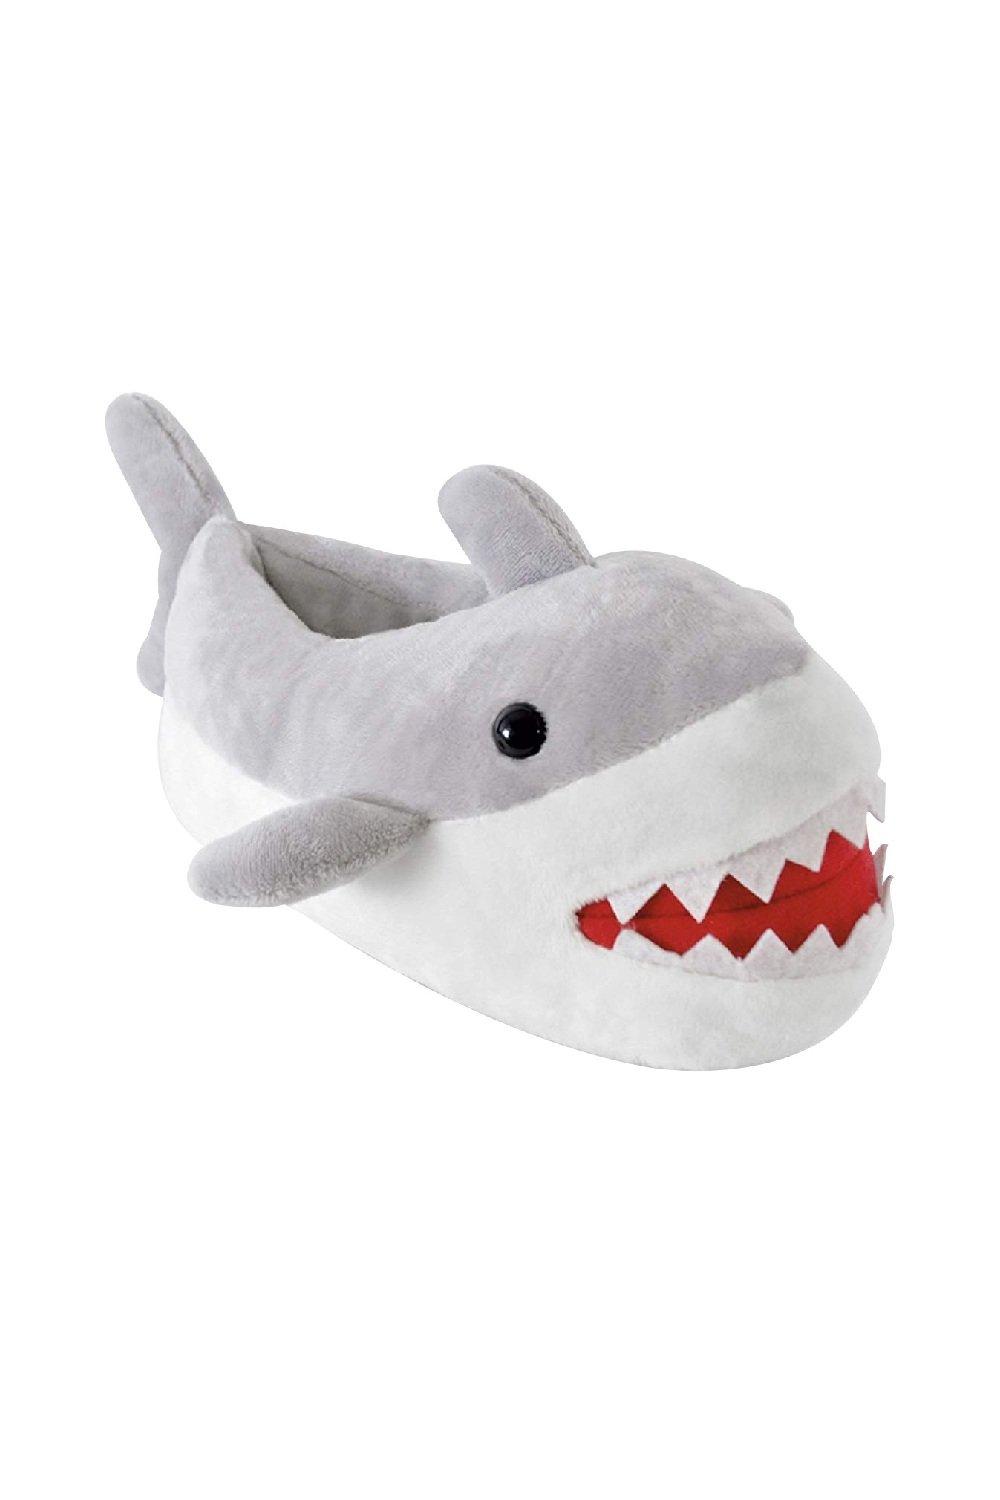 Plush Novelty 3D Shark Slippers Great Christmas Gift